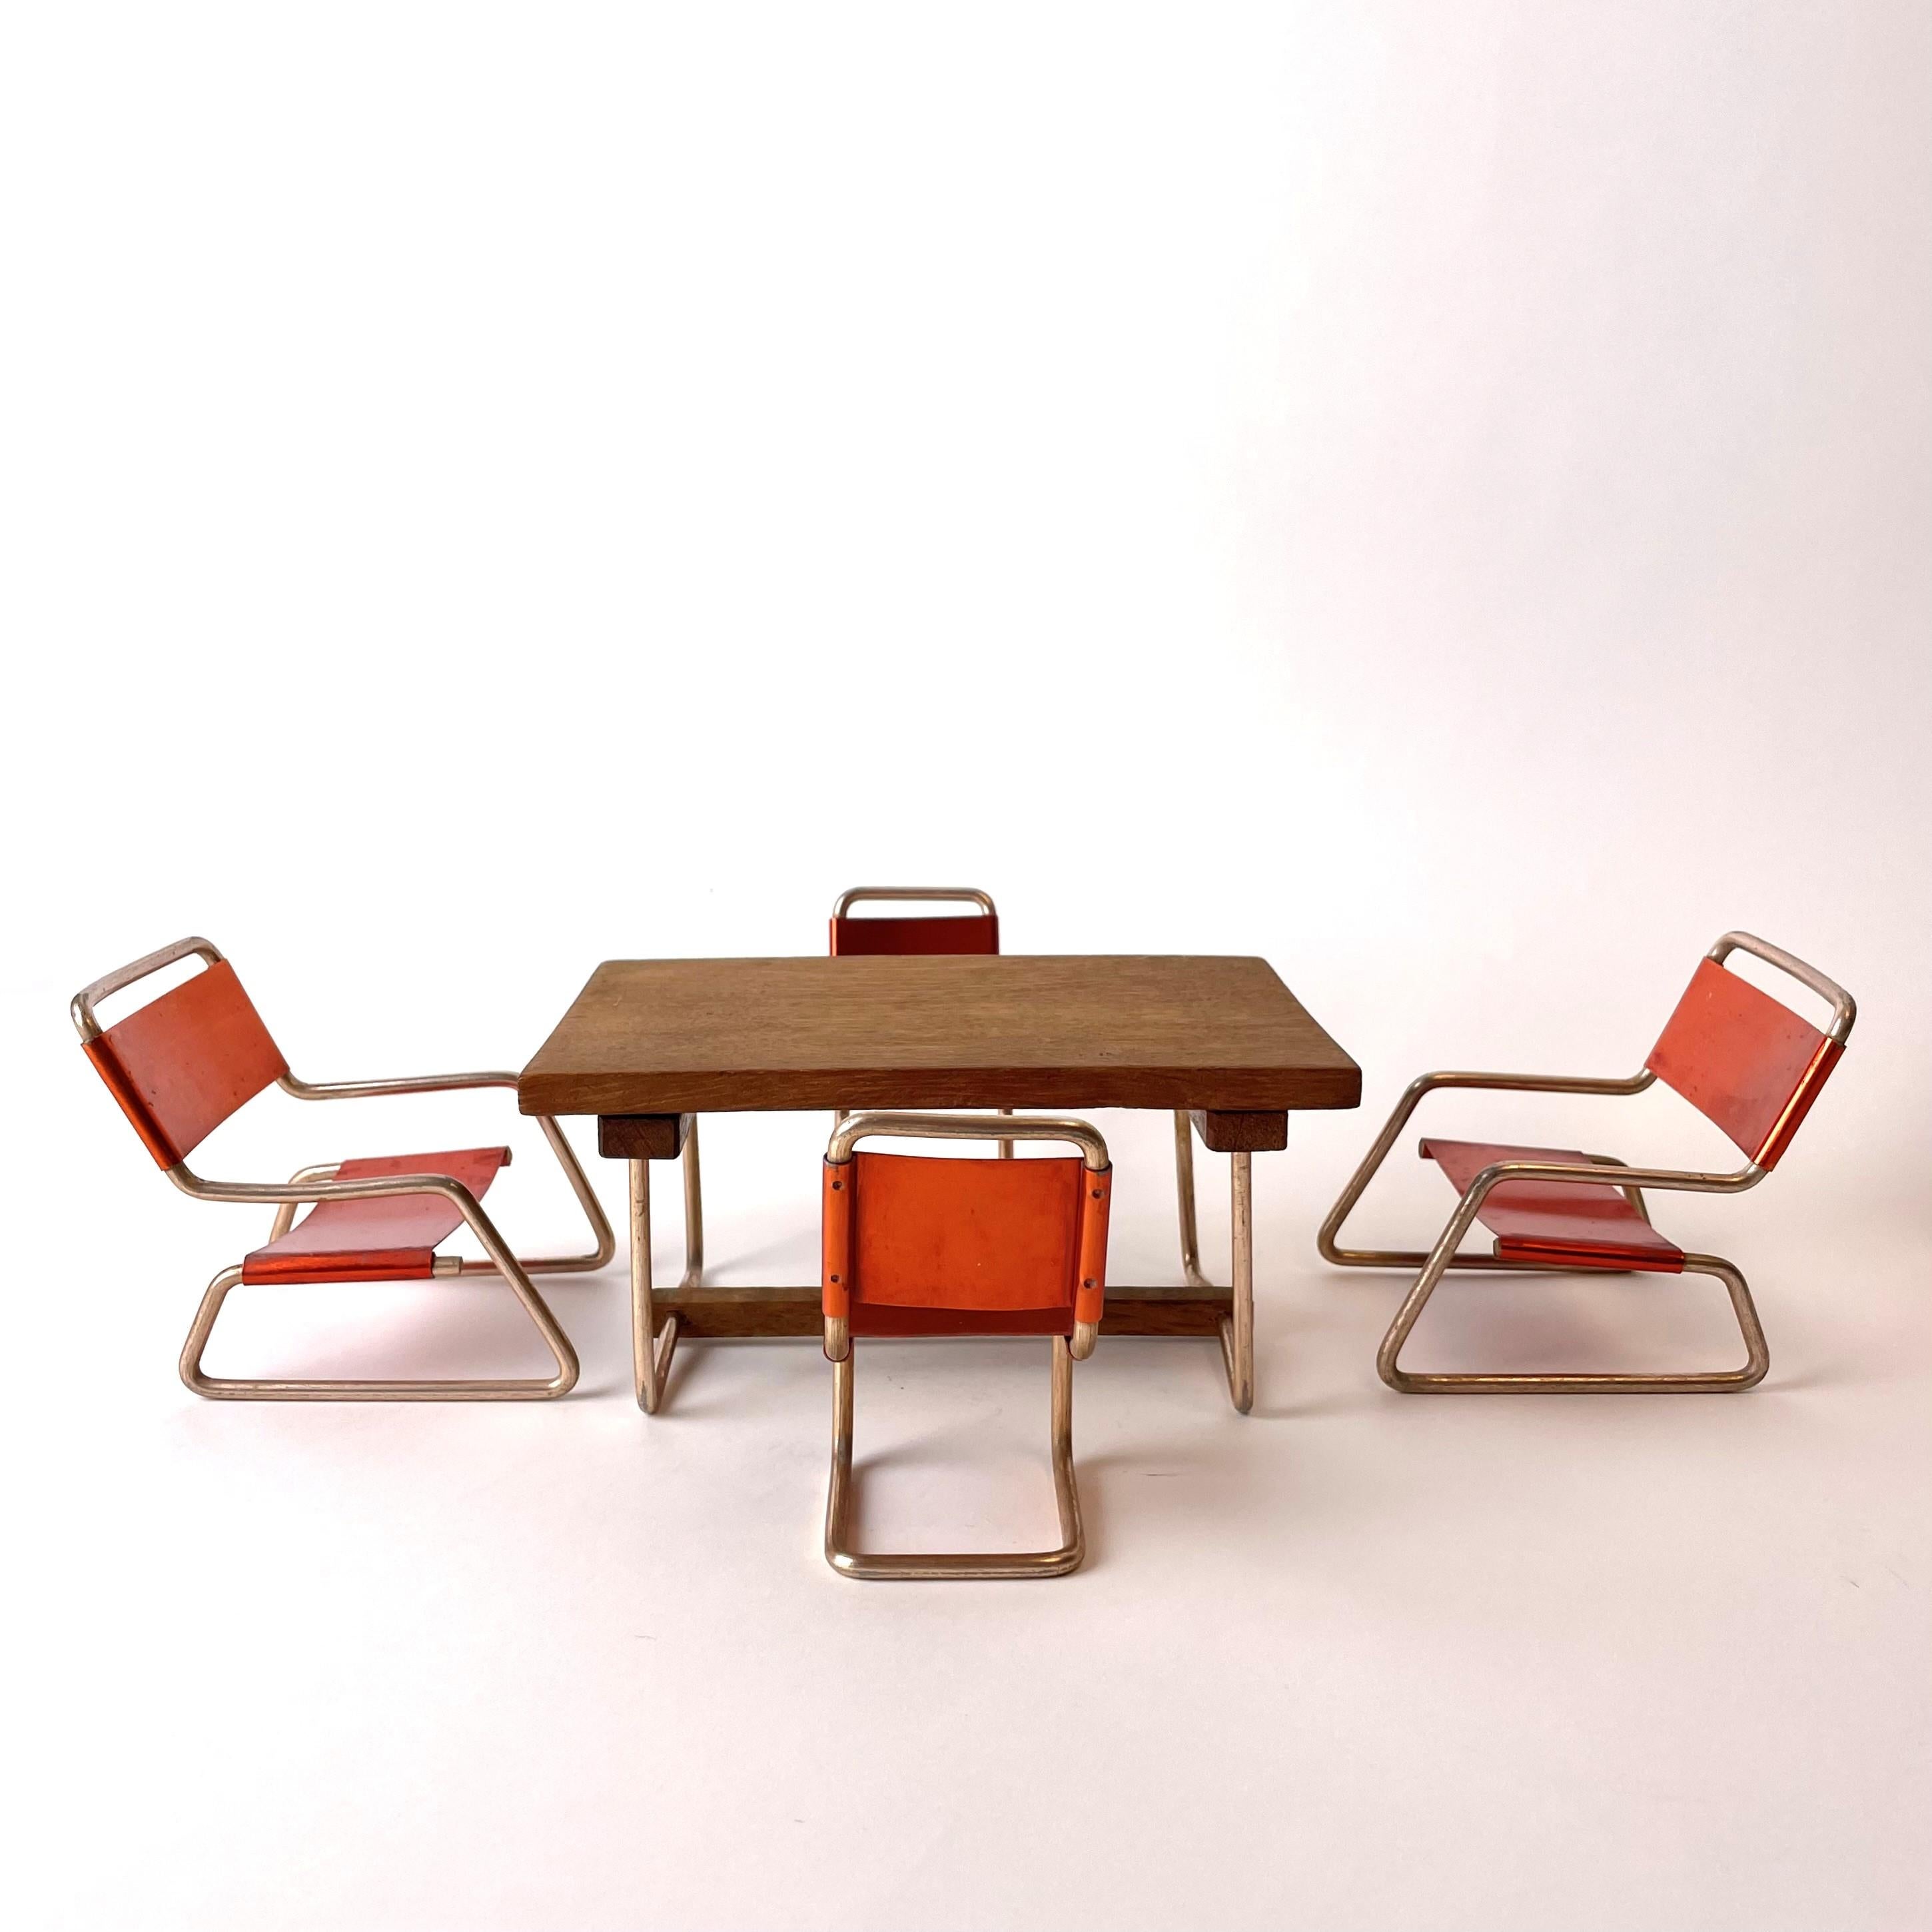 Charmante Miniatur-Sitzgruppe aus Aluminium und mit einer Tischplatte aus Teakholz. Hergestellt in den 1930er-1940er Jahren im zeittypischen Bauhaus-Stil.

Maße: Die ganze Gruppe, angeordnet wie auf den Fotos, etwa 42cm*28cm*10cm.
Tisch: